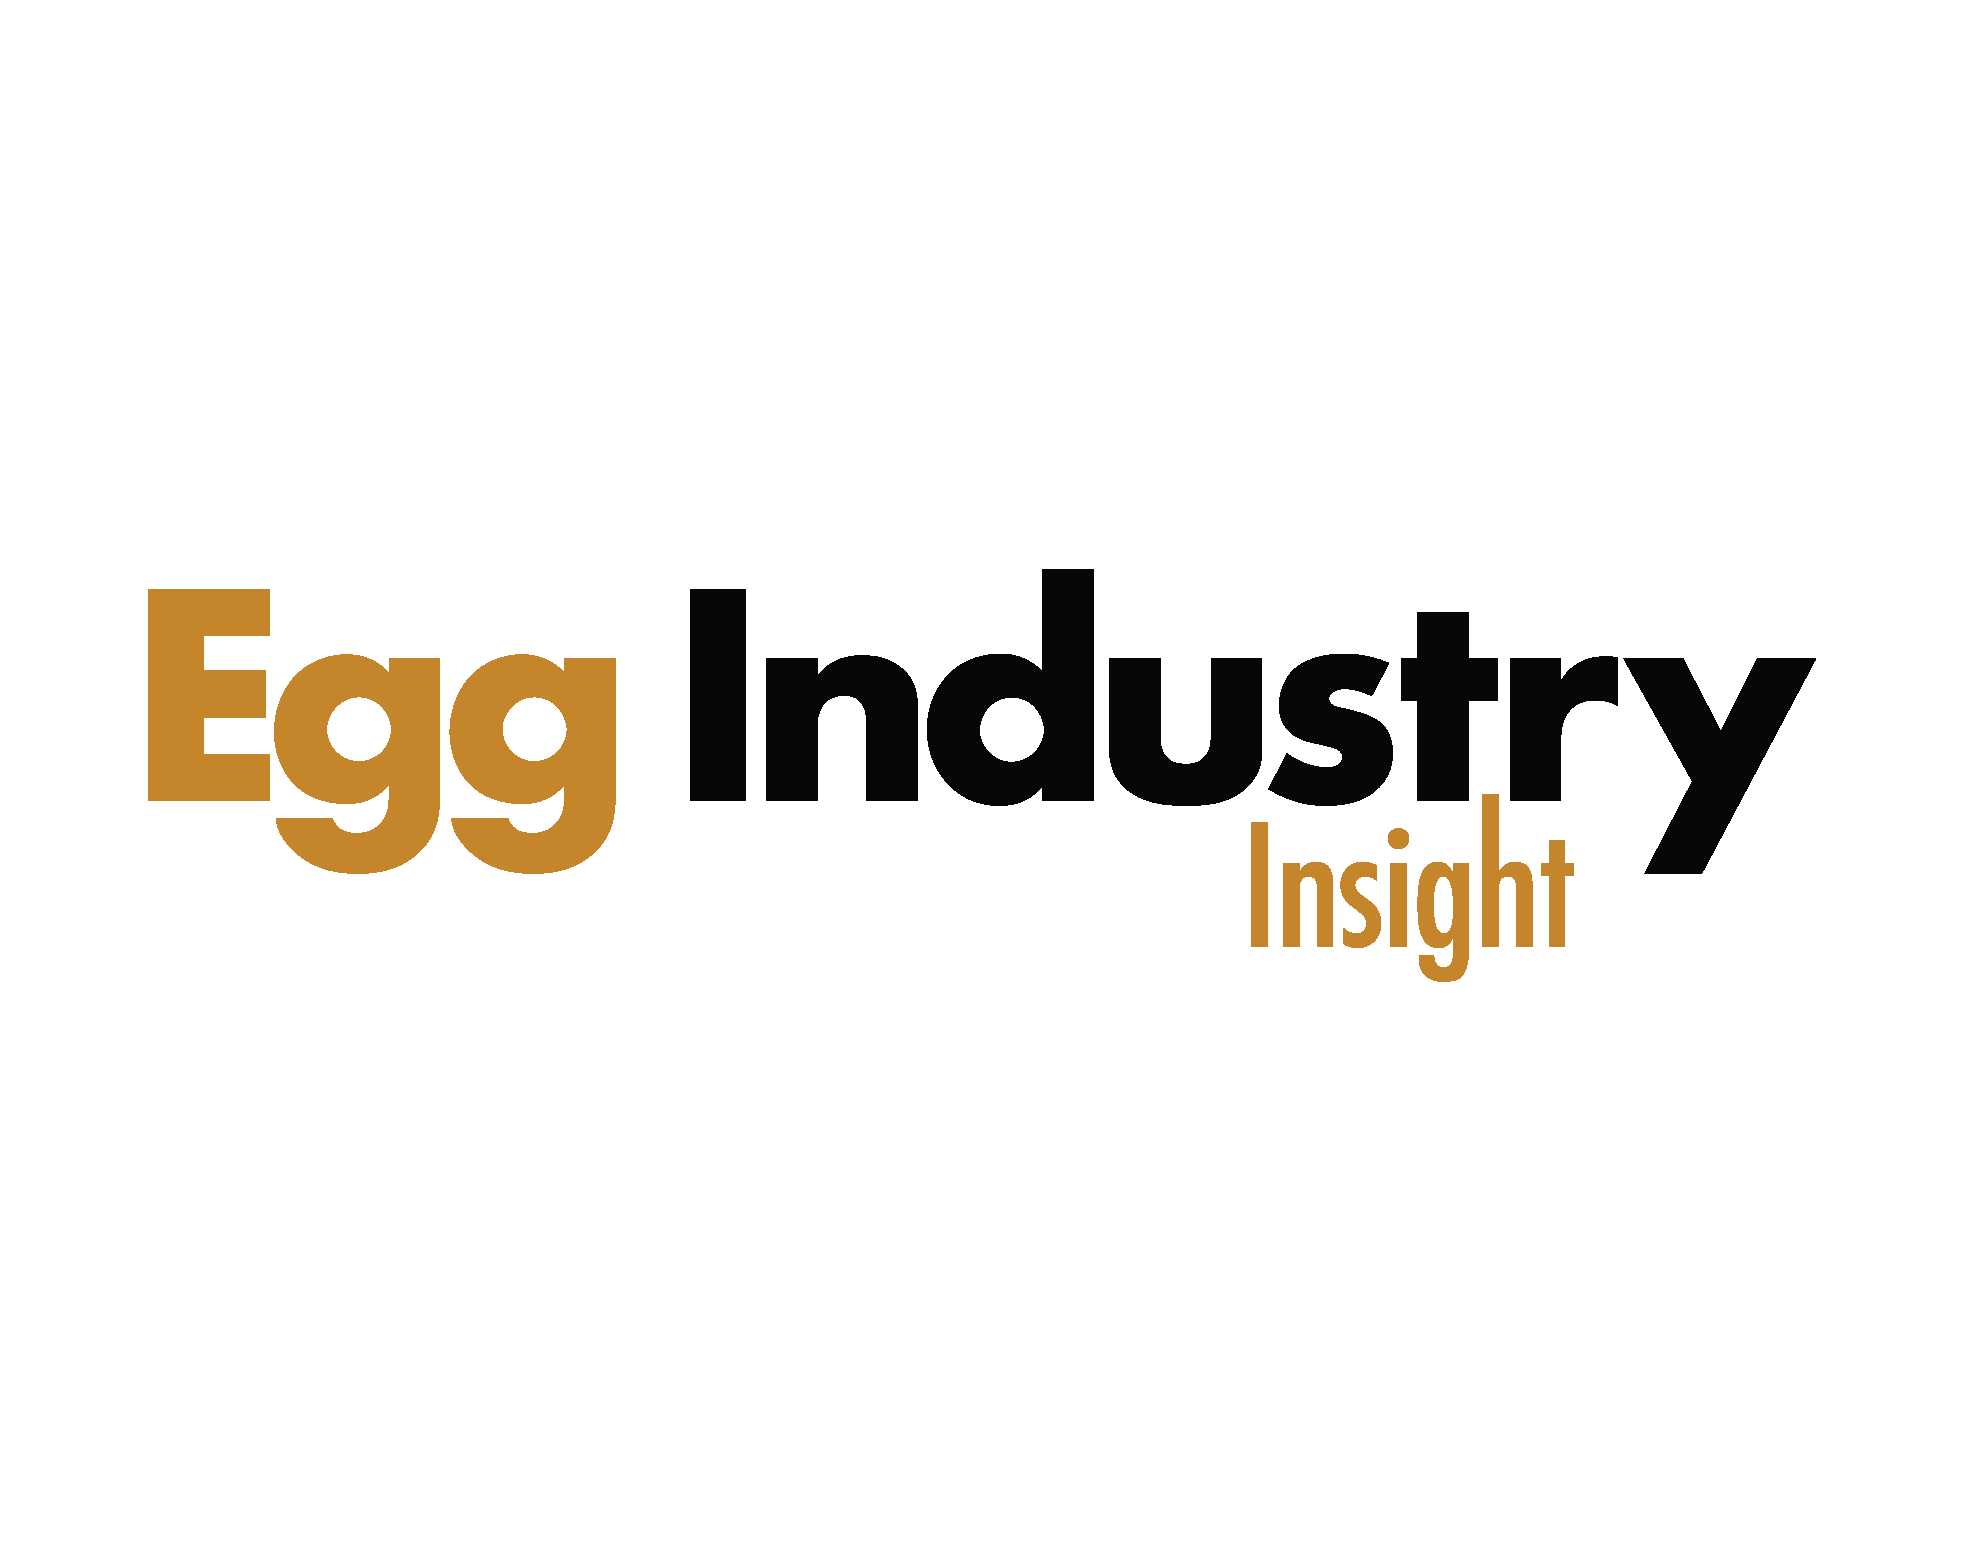 Egg Industry Insight